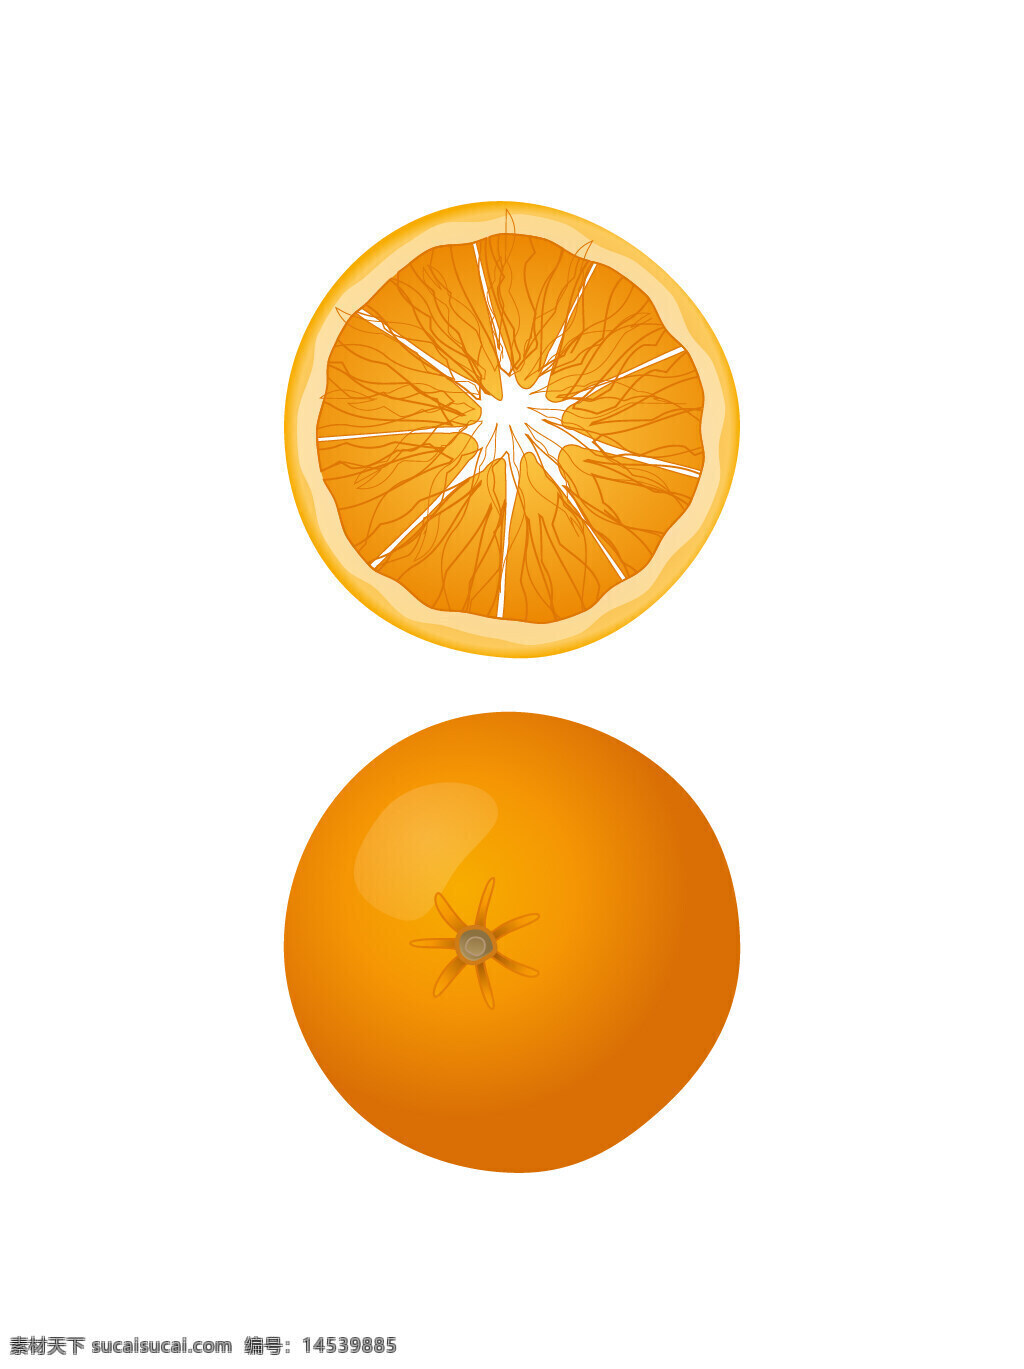 橙子 橘子 柑橘 水果 瓜果 食物 手绘水果 矢量水果 手绘素材 矢量素材 新鲜水果 植物